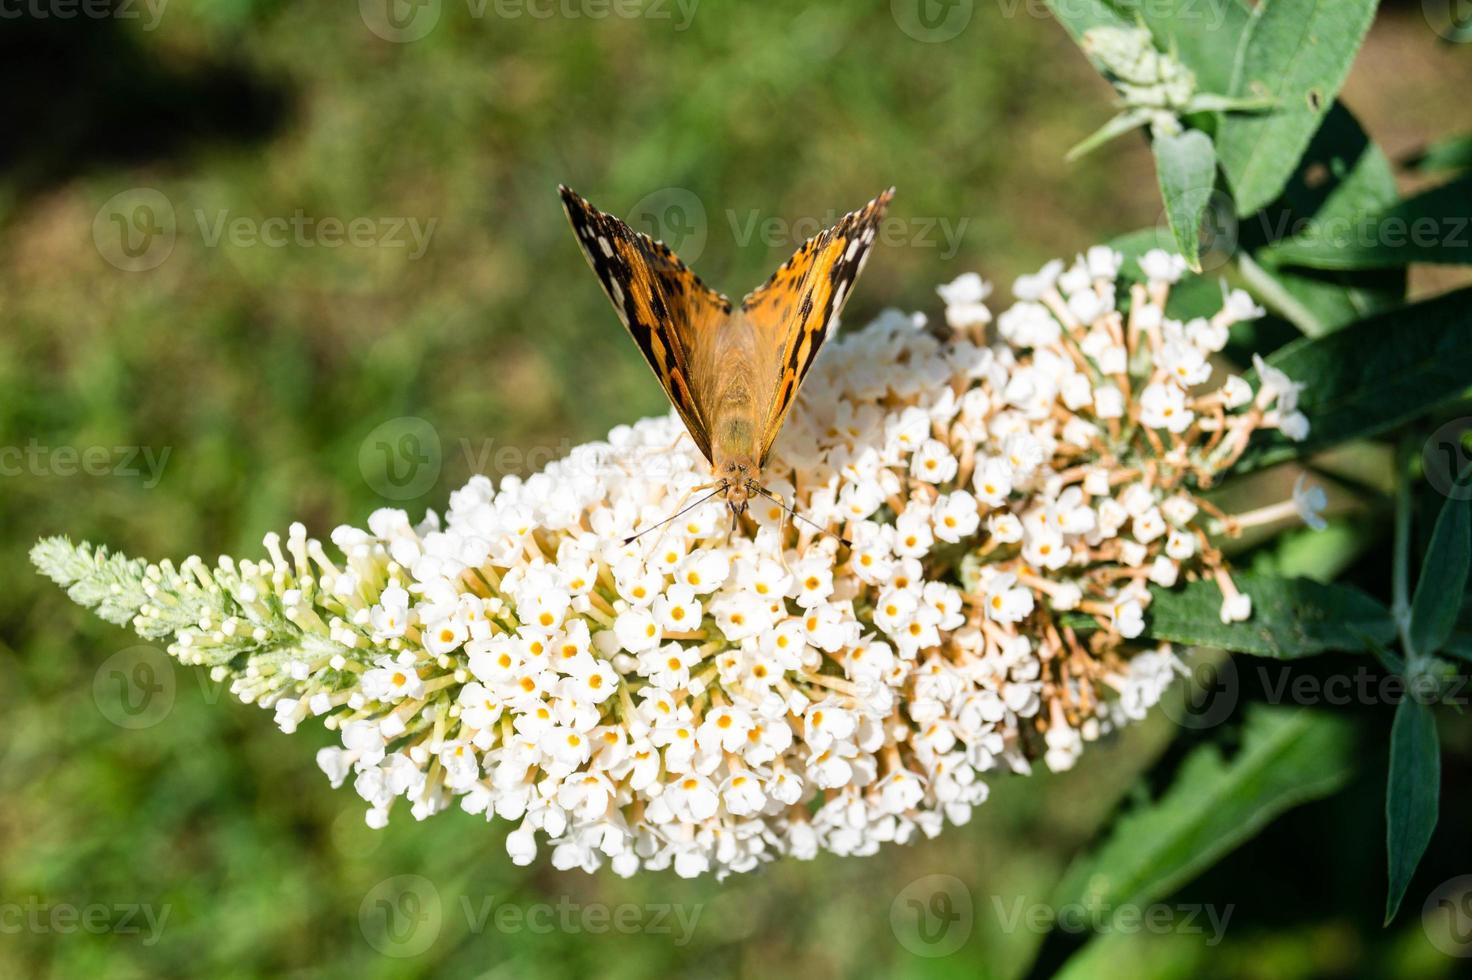 fjäril vanessa cardui eller cynthia cardui i trädgården foto